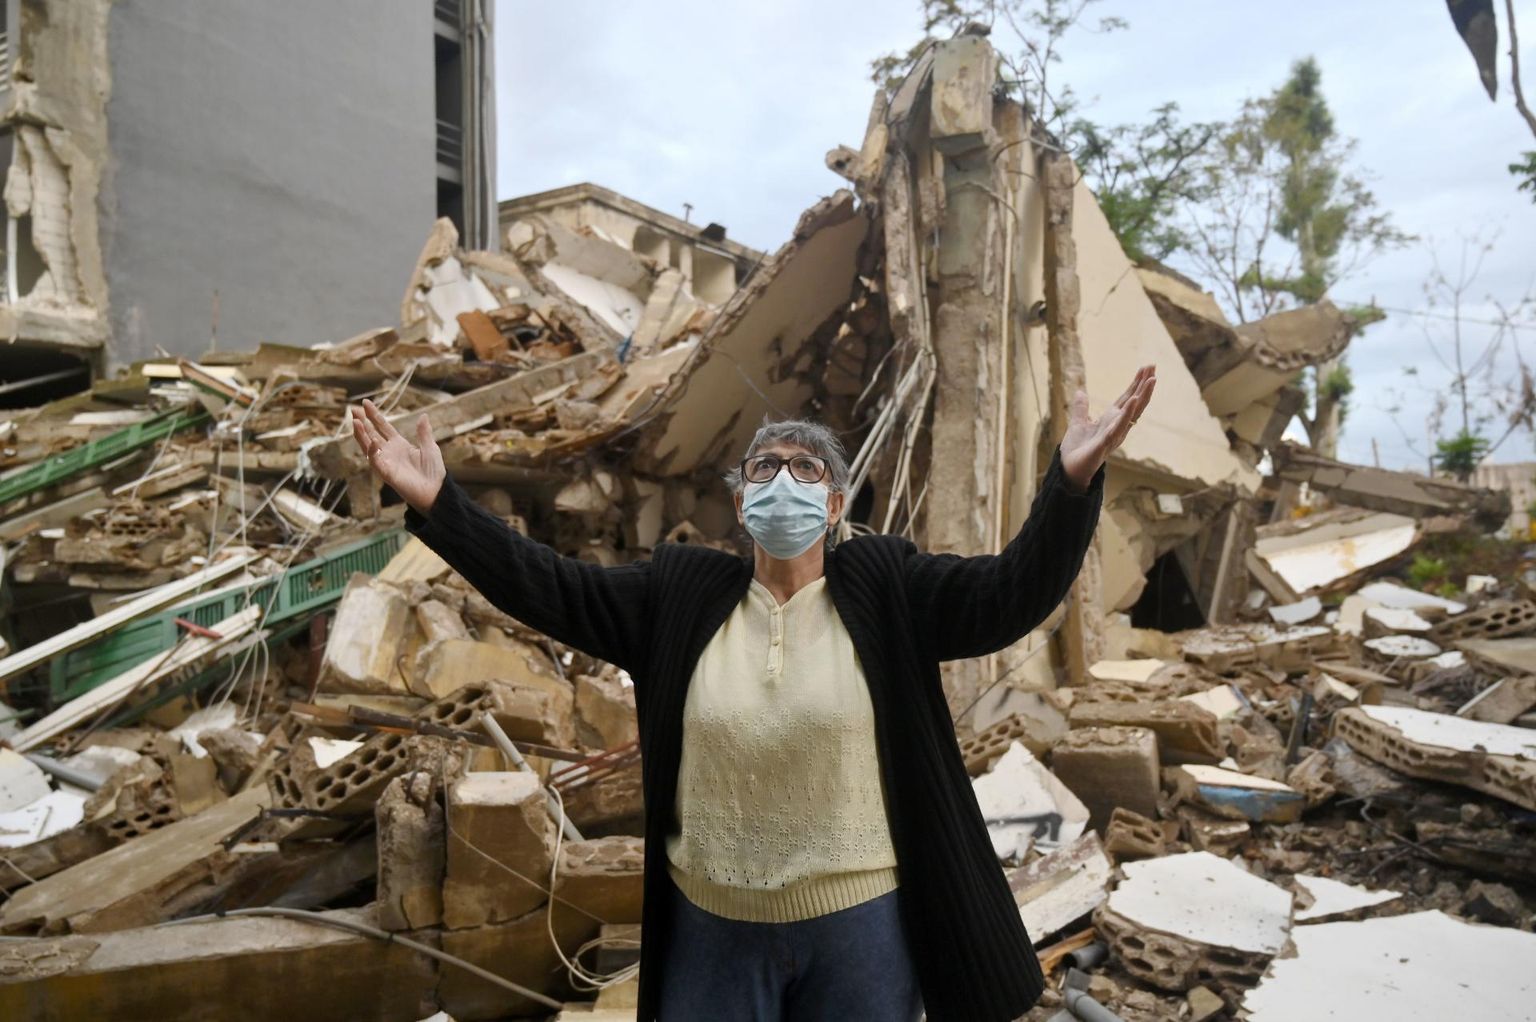 Palveks tõstetud kätega naine tormis ja vihmas kokku varisenud maja ees Ashrafieh’ linnaosas Beirutis. Vana kolmekorruseline maja seisis pärast linna raputanud plahvatusi täiesti tühjana, enne tegutses selle esimesel korrusel jäätisepood. 